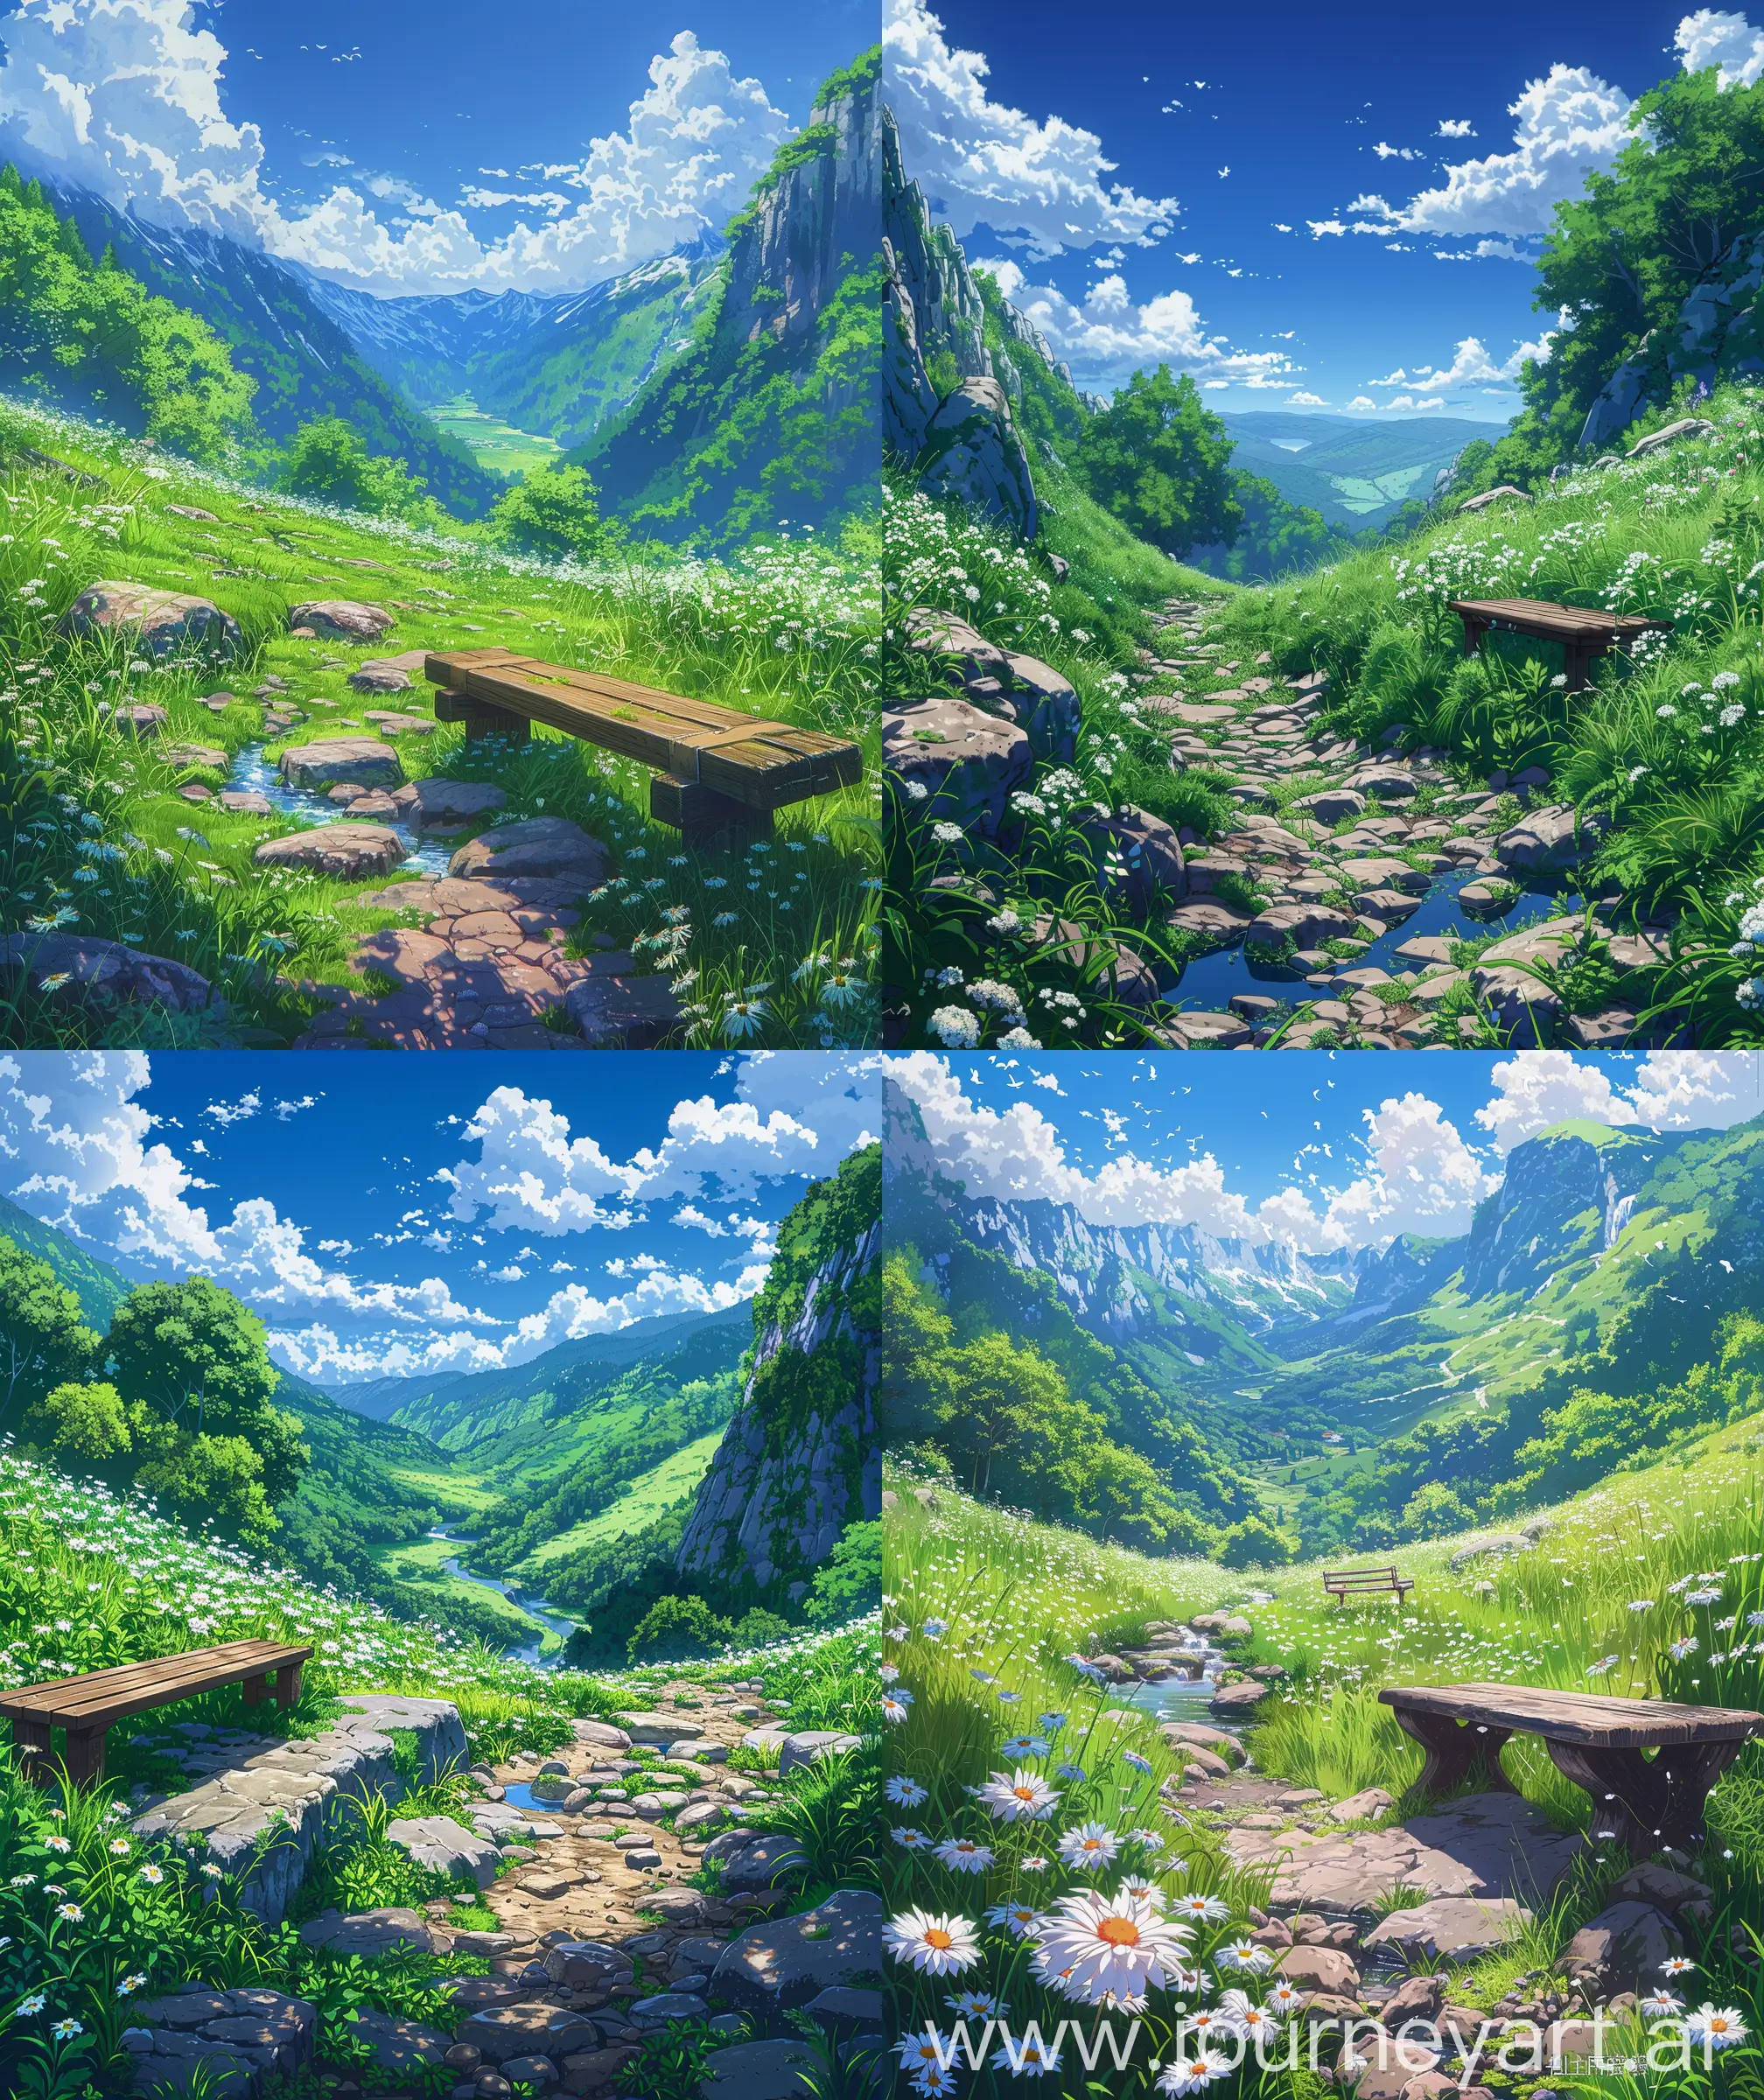 Serene-Anime-Scenery-Makoto-Shinkai-and-Ghibli-Inspired-Valley-Stream